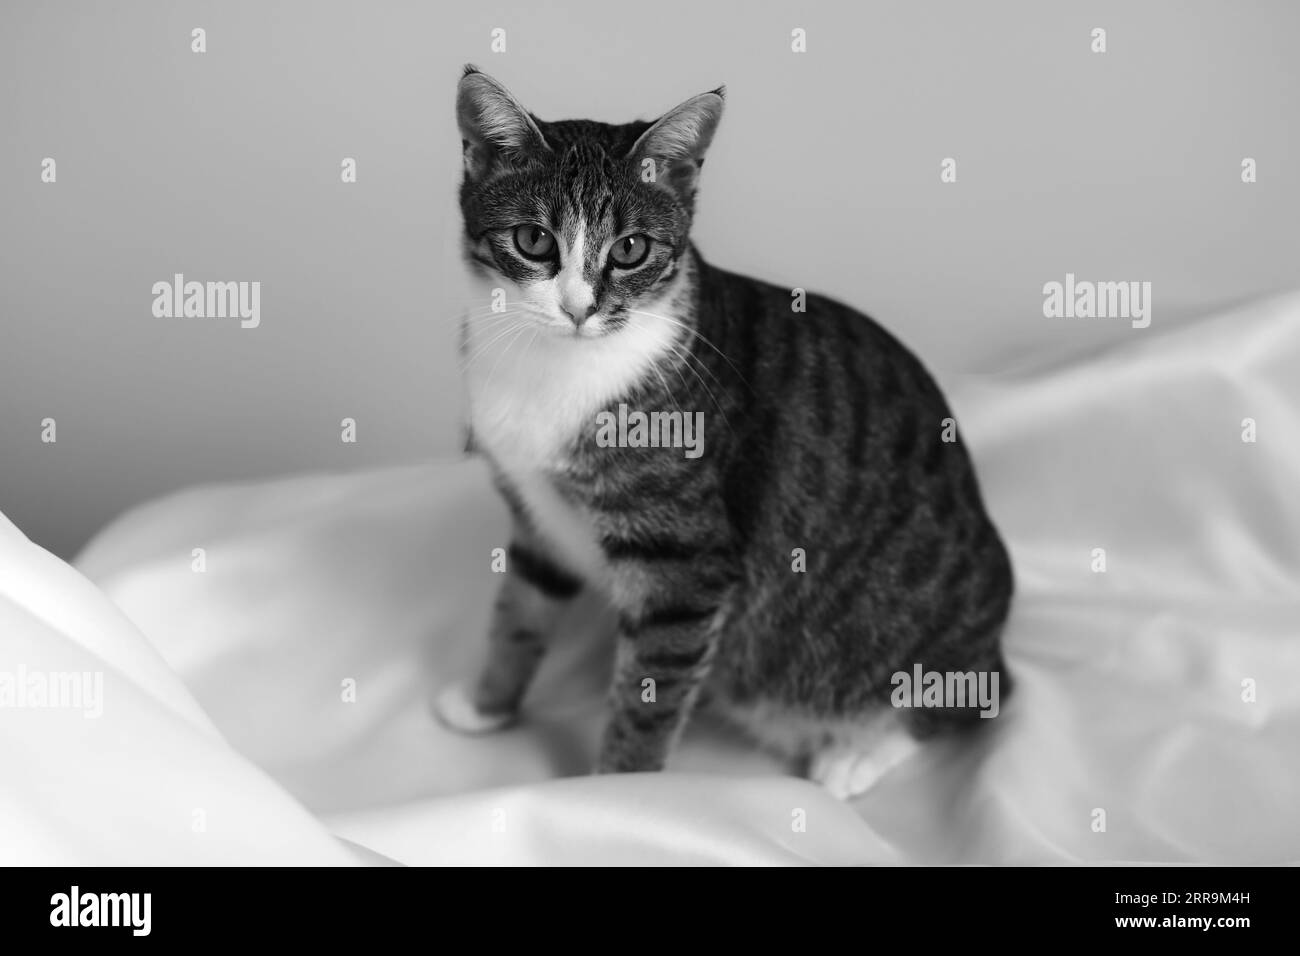 Une échelle de gris d'un chat tabby domestique sur une couverture Banque D'Images